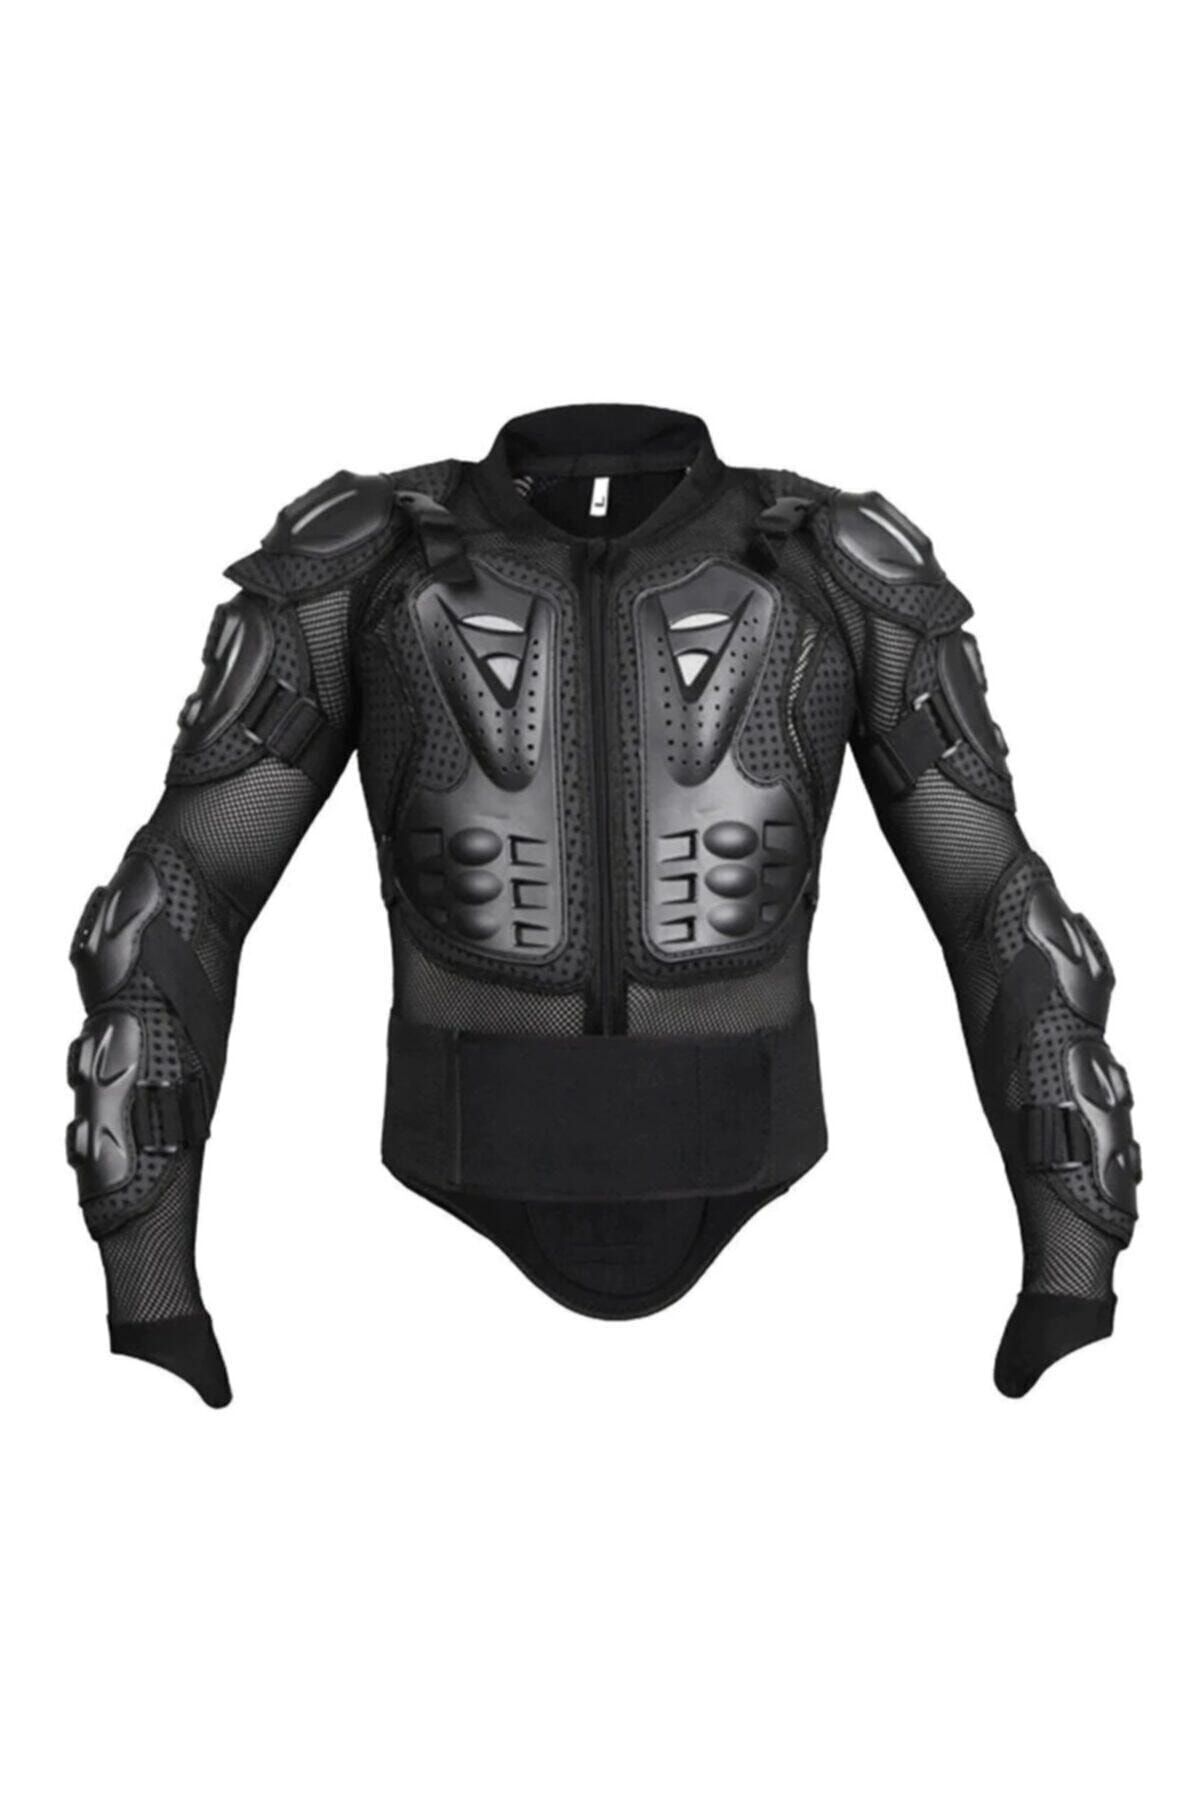 AnkaShop Siyah Body Armor Fileli Yazlık Full Koruma Omuz Sırt Dirsek Göğüs Karın Koruma Cross Motorcu Montu